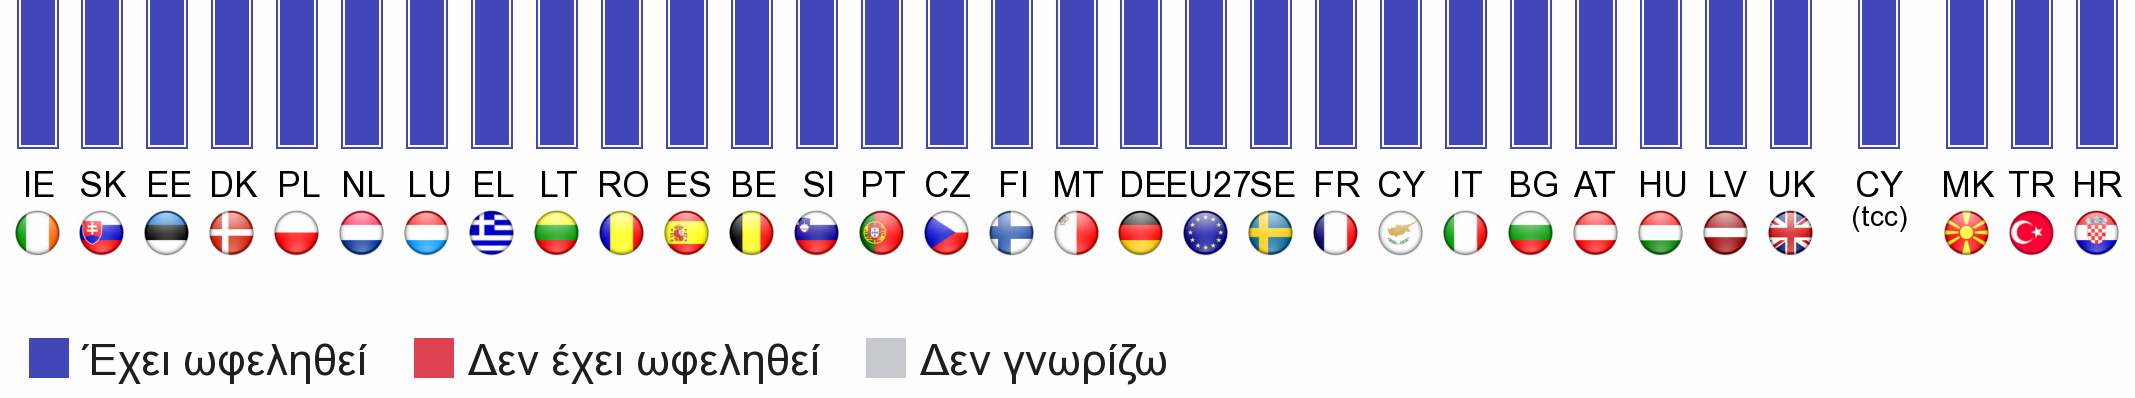 Αξιολογώντας τη συµµετοχή της Ελλάδας: θετική ή αρνητική Οι περισσότεροι έλληνες πολίτες επιδοκιµάζουν τη συµµετοχή της Ελλάδας στην Ευρωπαϊκή Ένωση (EL: 61% - EU27: 53%).